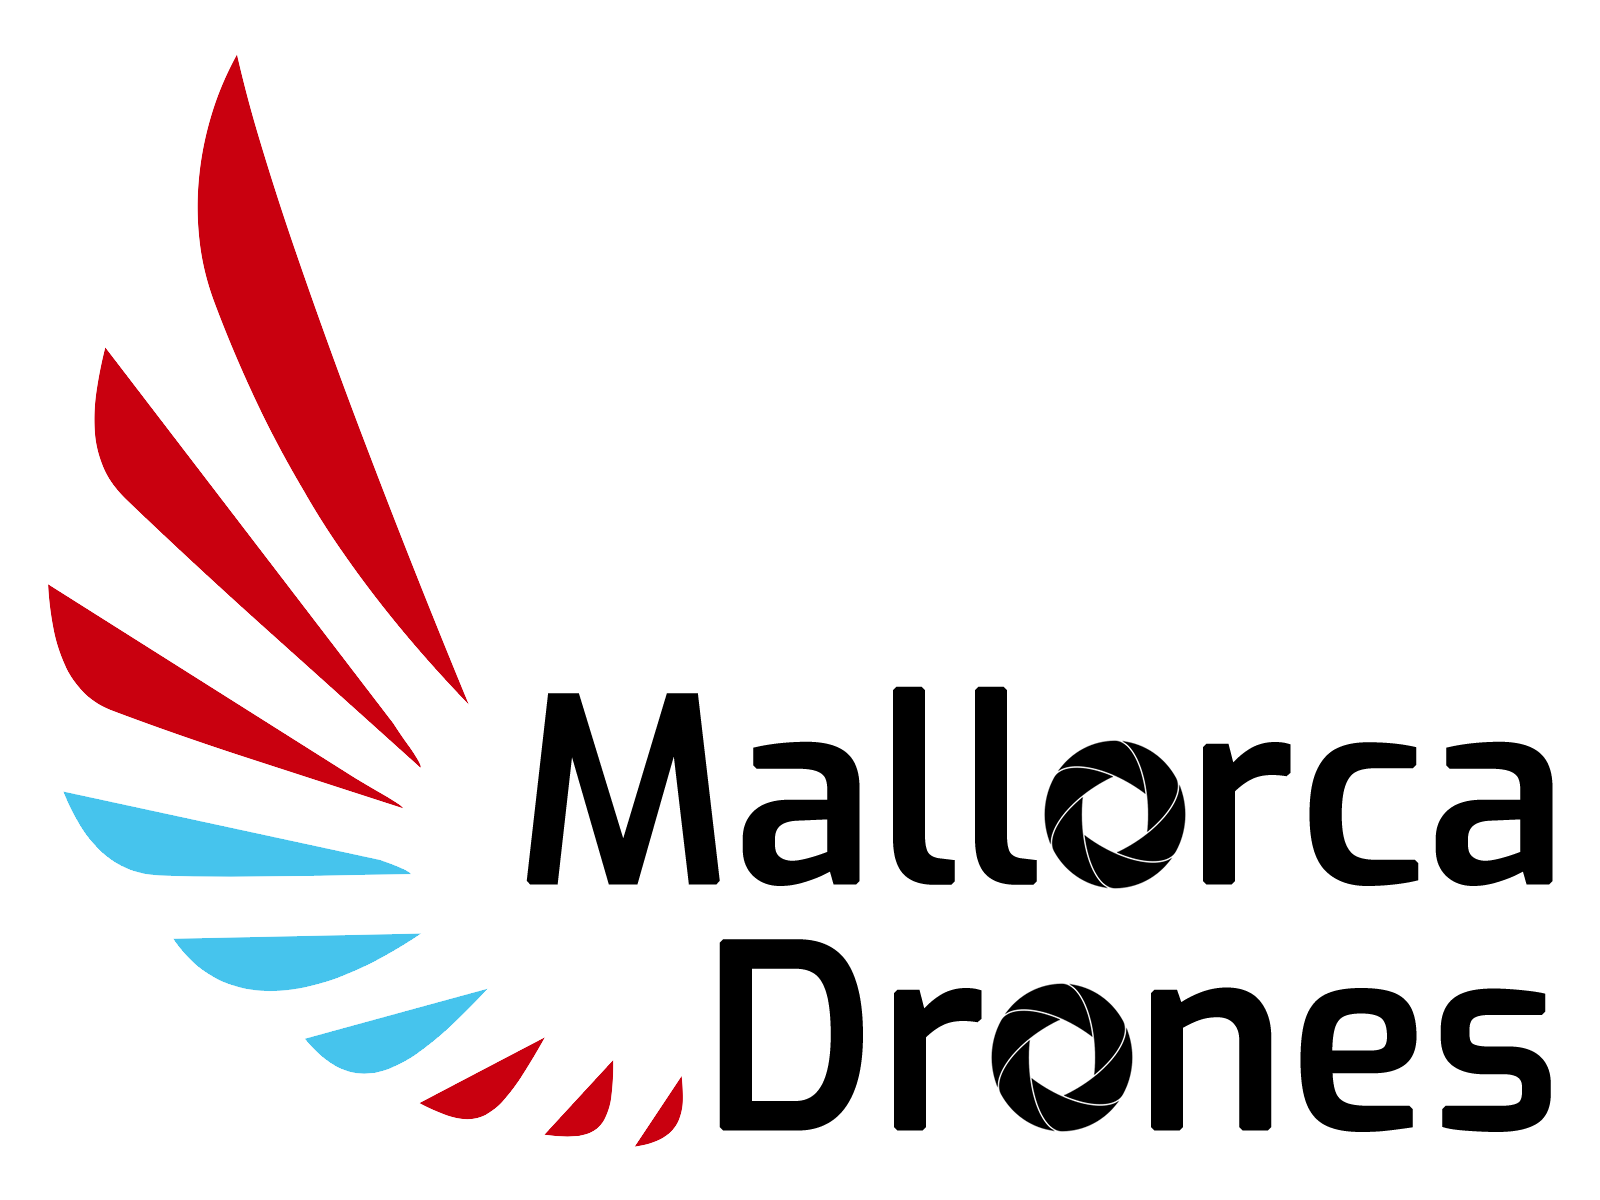 logos-sponsors-fai-europeo-2019-MallorcaDrones